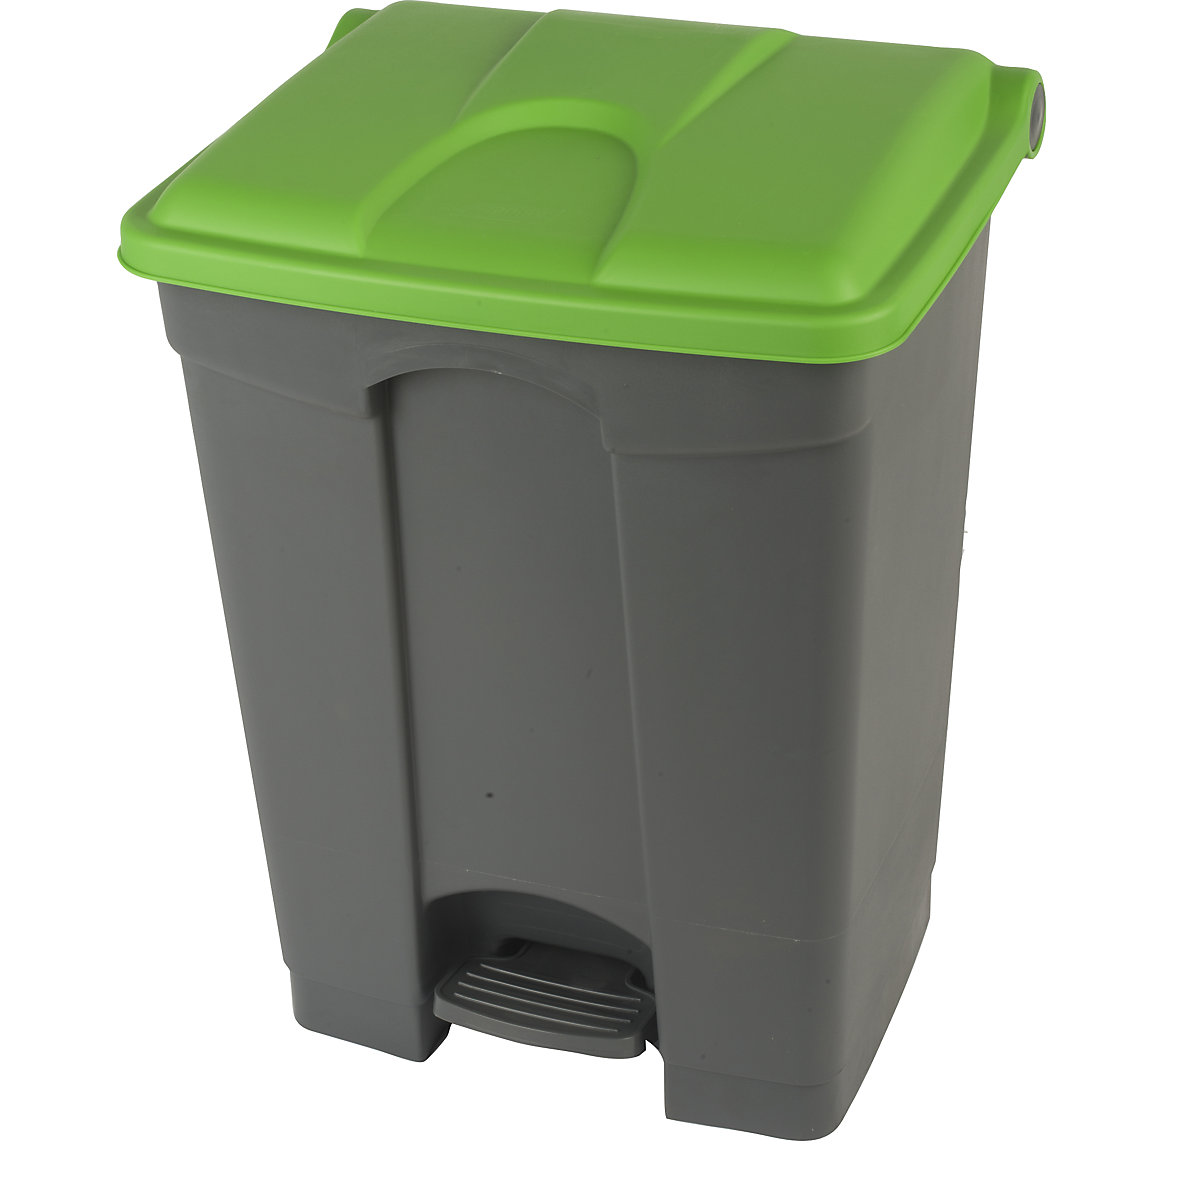 EUROKRAFTbasic – Afvalverzamelaar met pedaal, inhoud 70 l, b x h x d = 505 x 675 x 415 mm, grijs, deksel groen